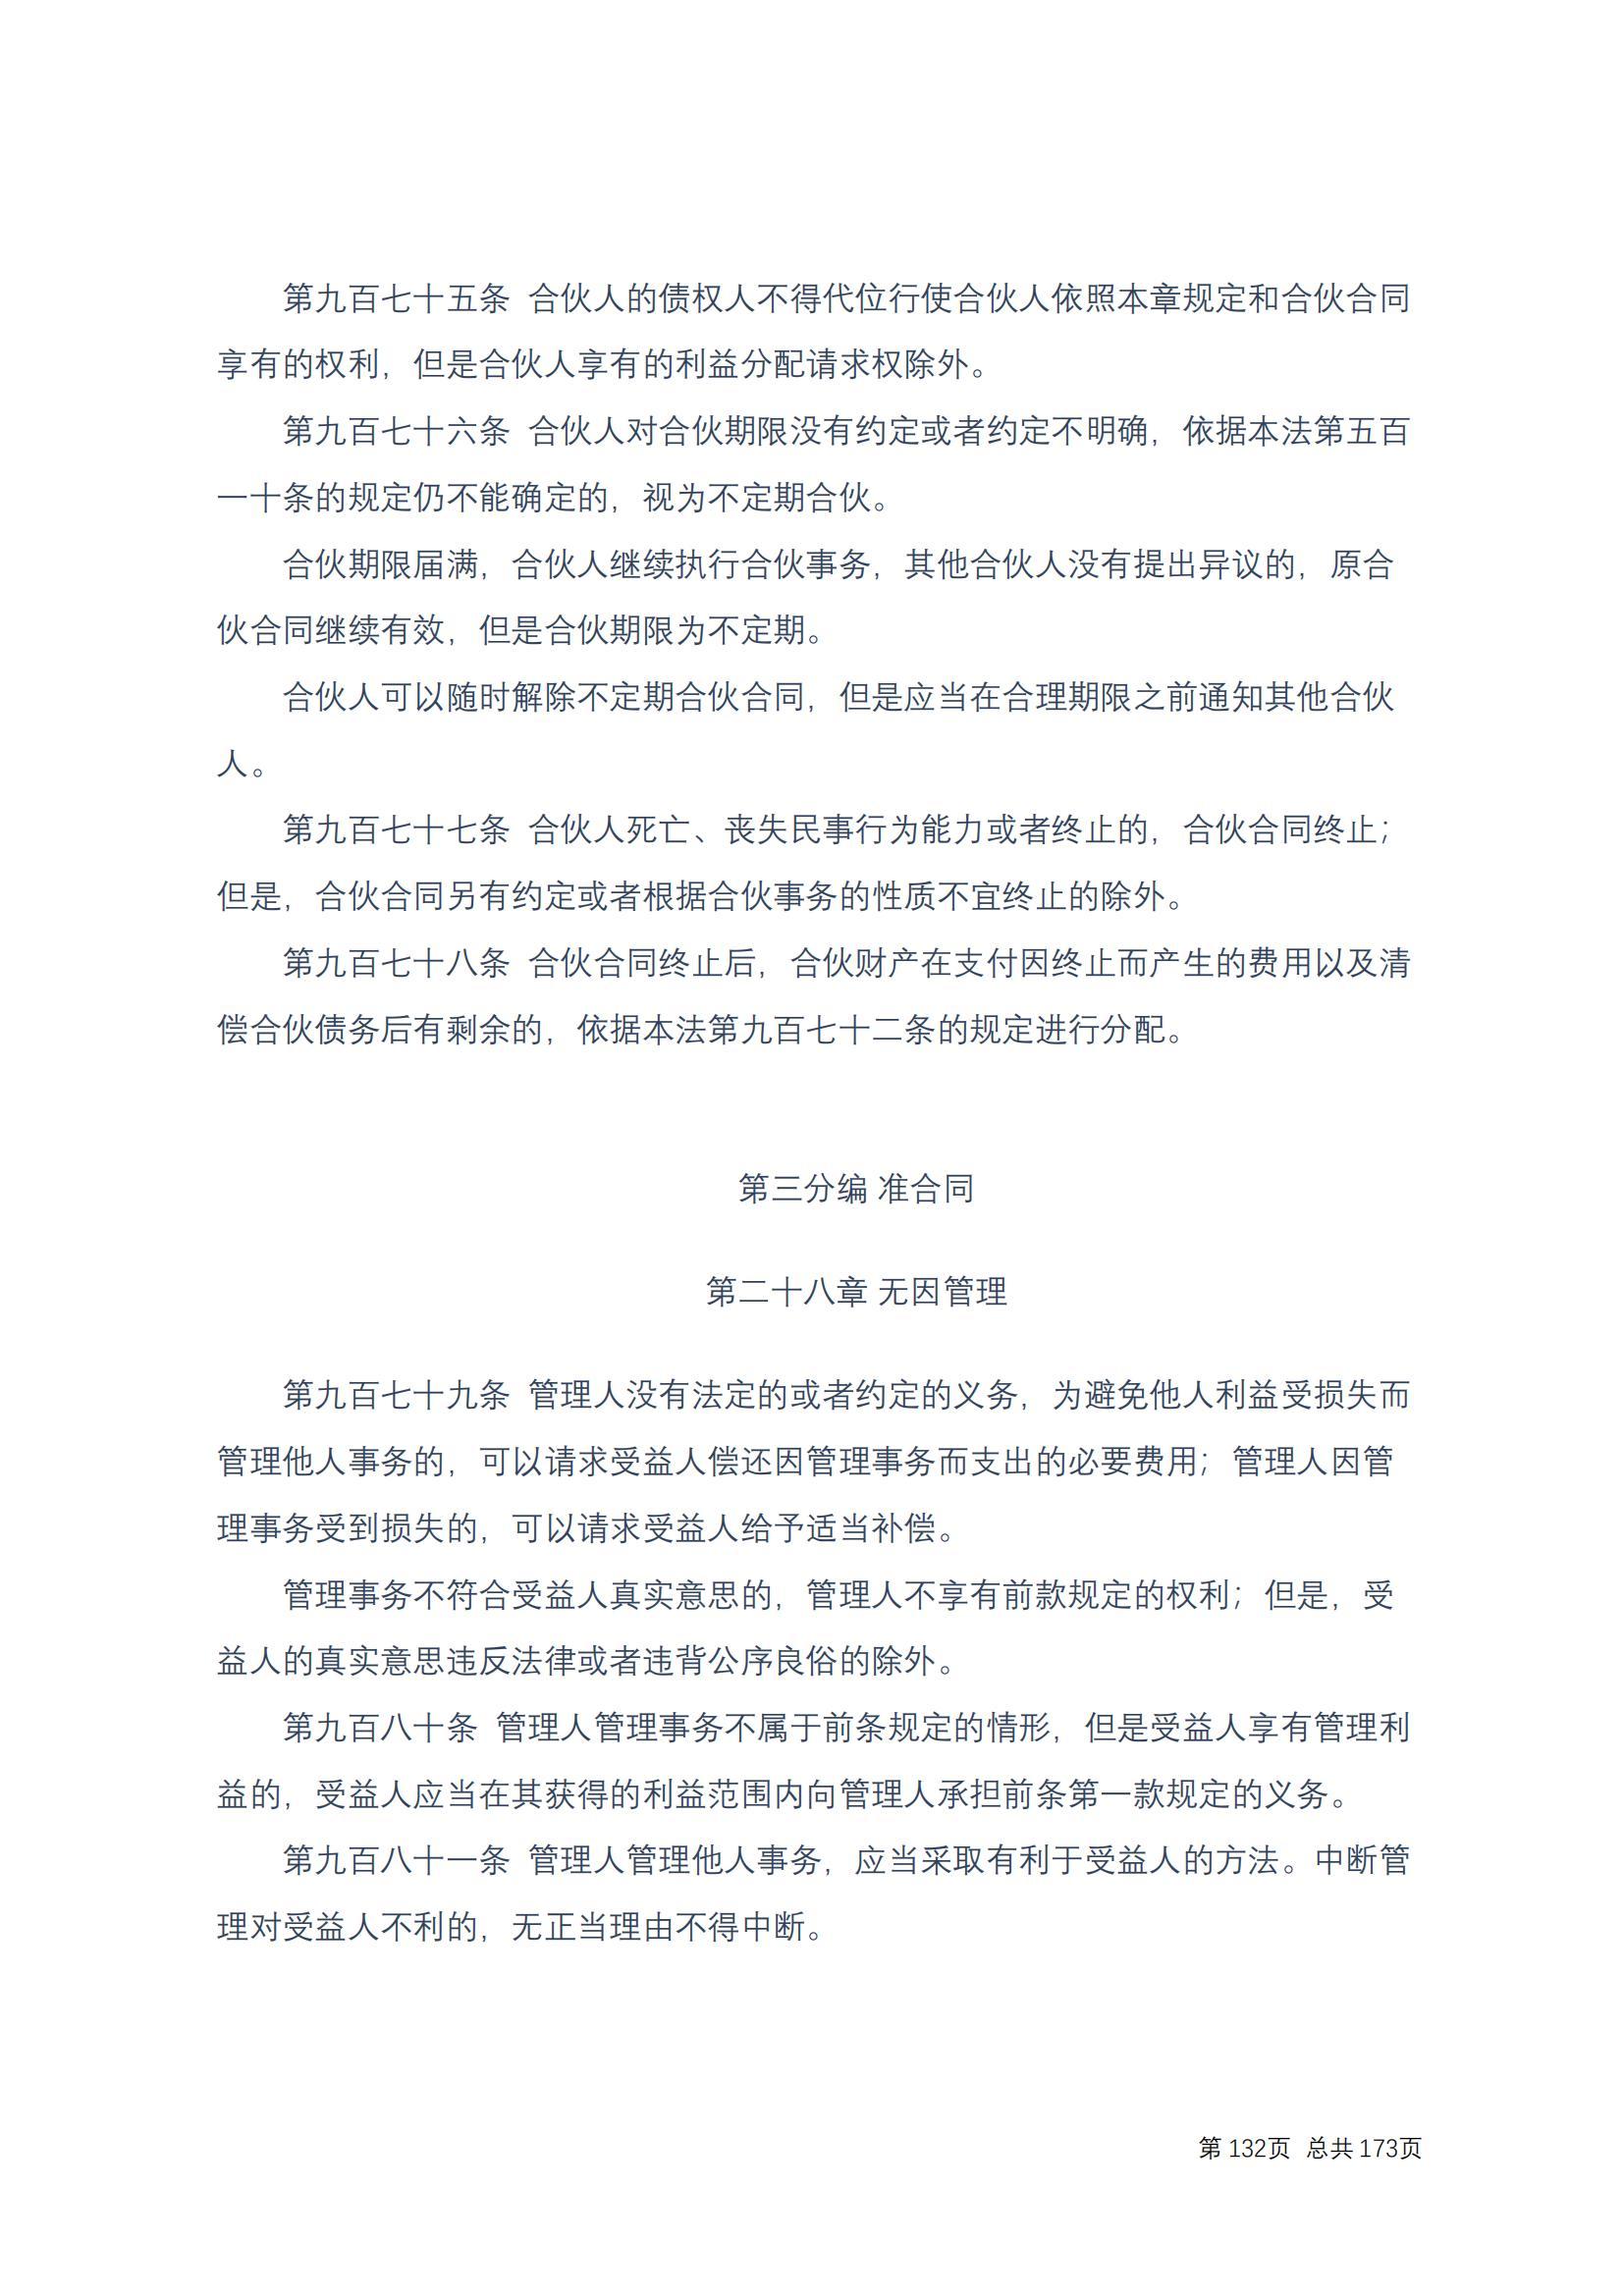 中华人民共和国民法典 修改过_131